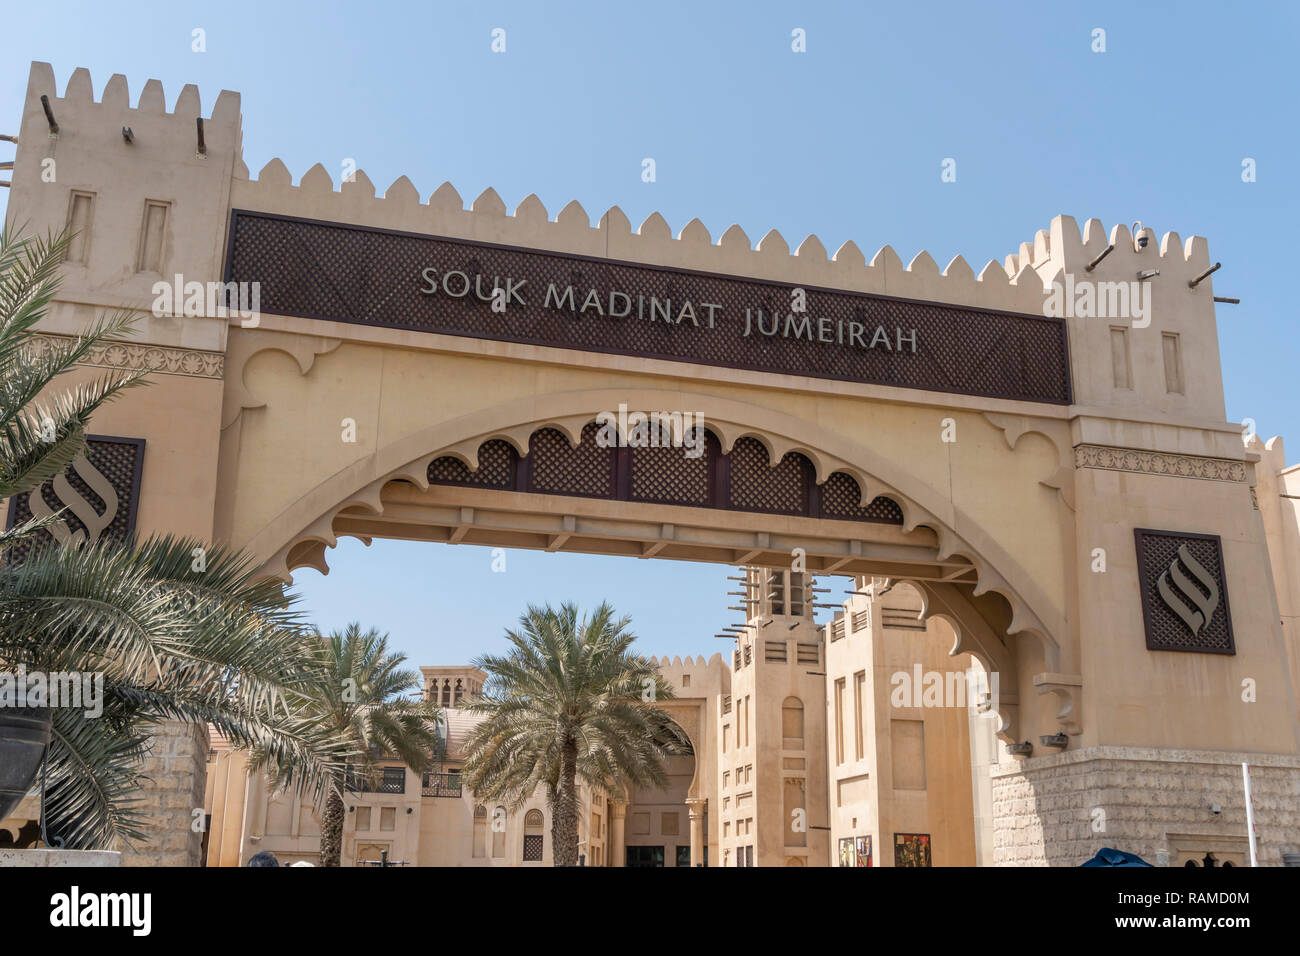 Dubai, VAE - Oktober 15, 2018: Blick auf den Eingang der Souk Madinat Jumeirah in Dubai. Es ist ein Einkaufszentrum mit traditionellen orientalischen Stil. Stockfoto